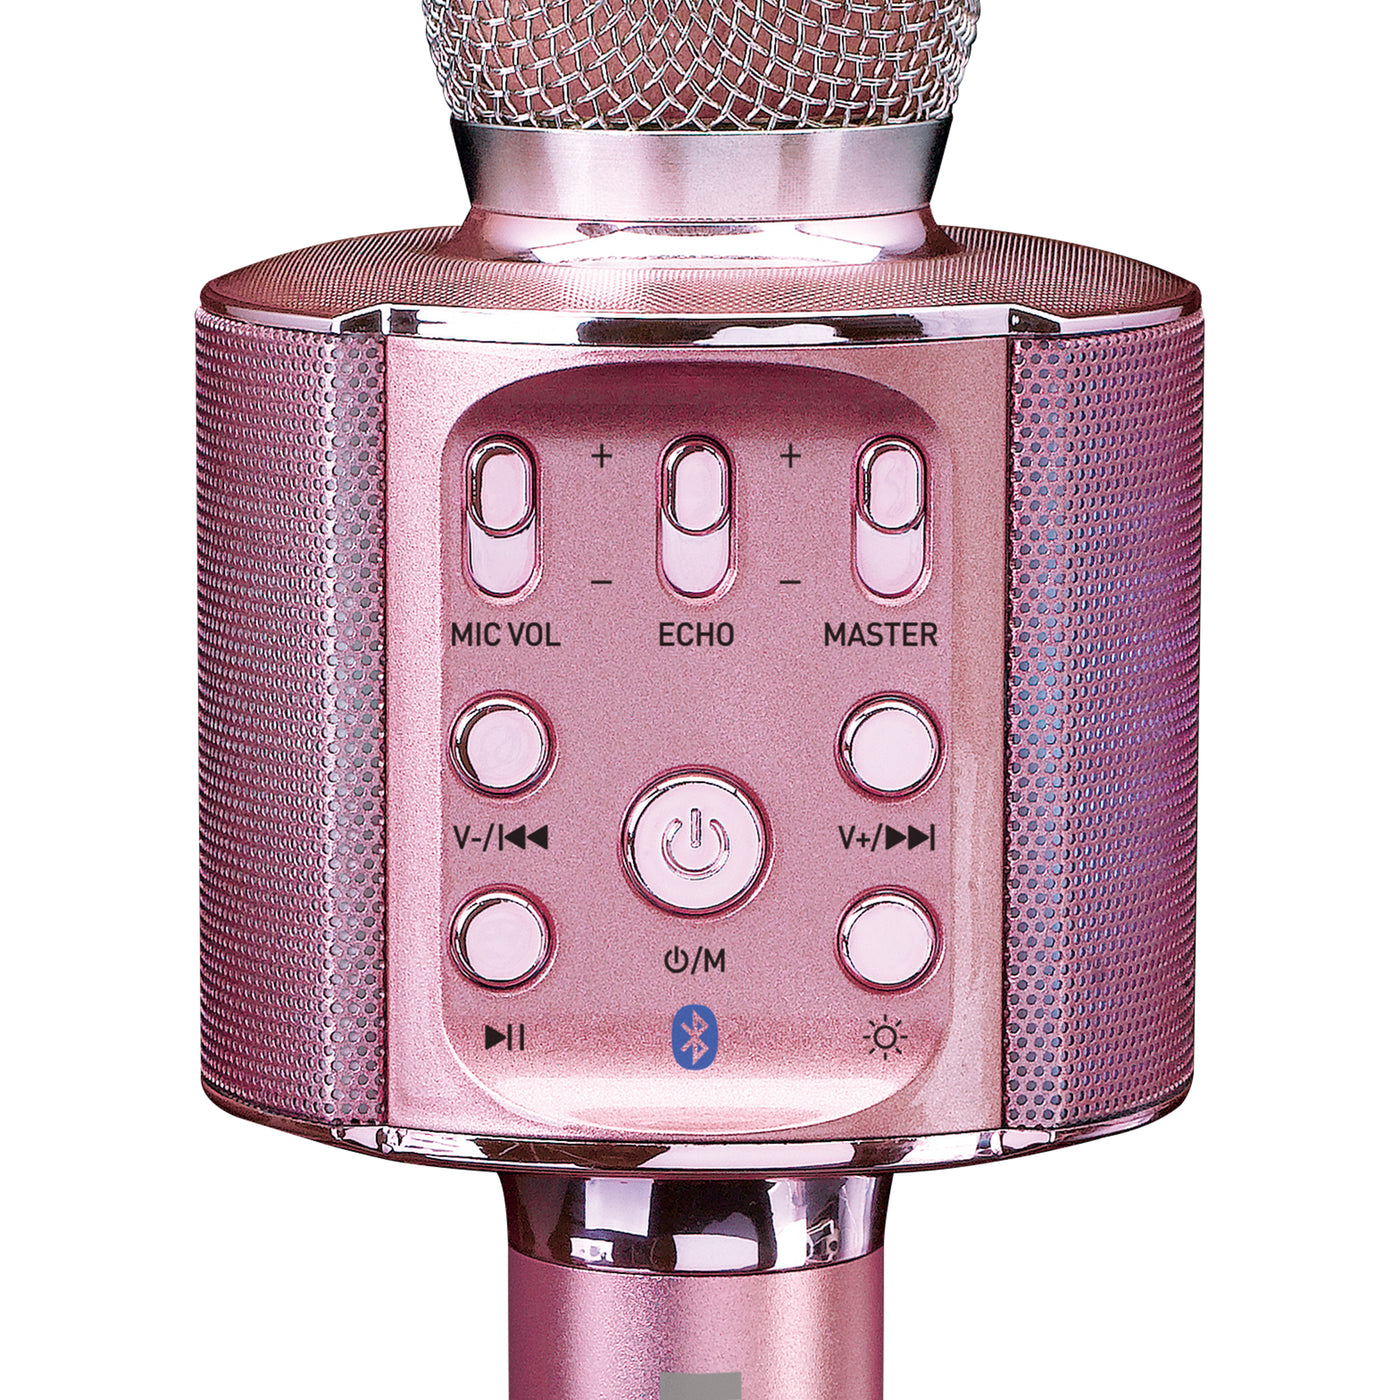 Lenco BMC-090PK - Microphone Bluetooth® pour karaoké avec enceinte et éclairage - Rose